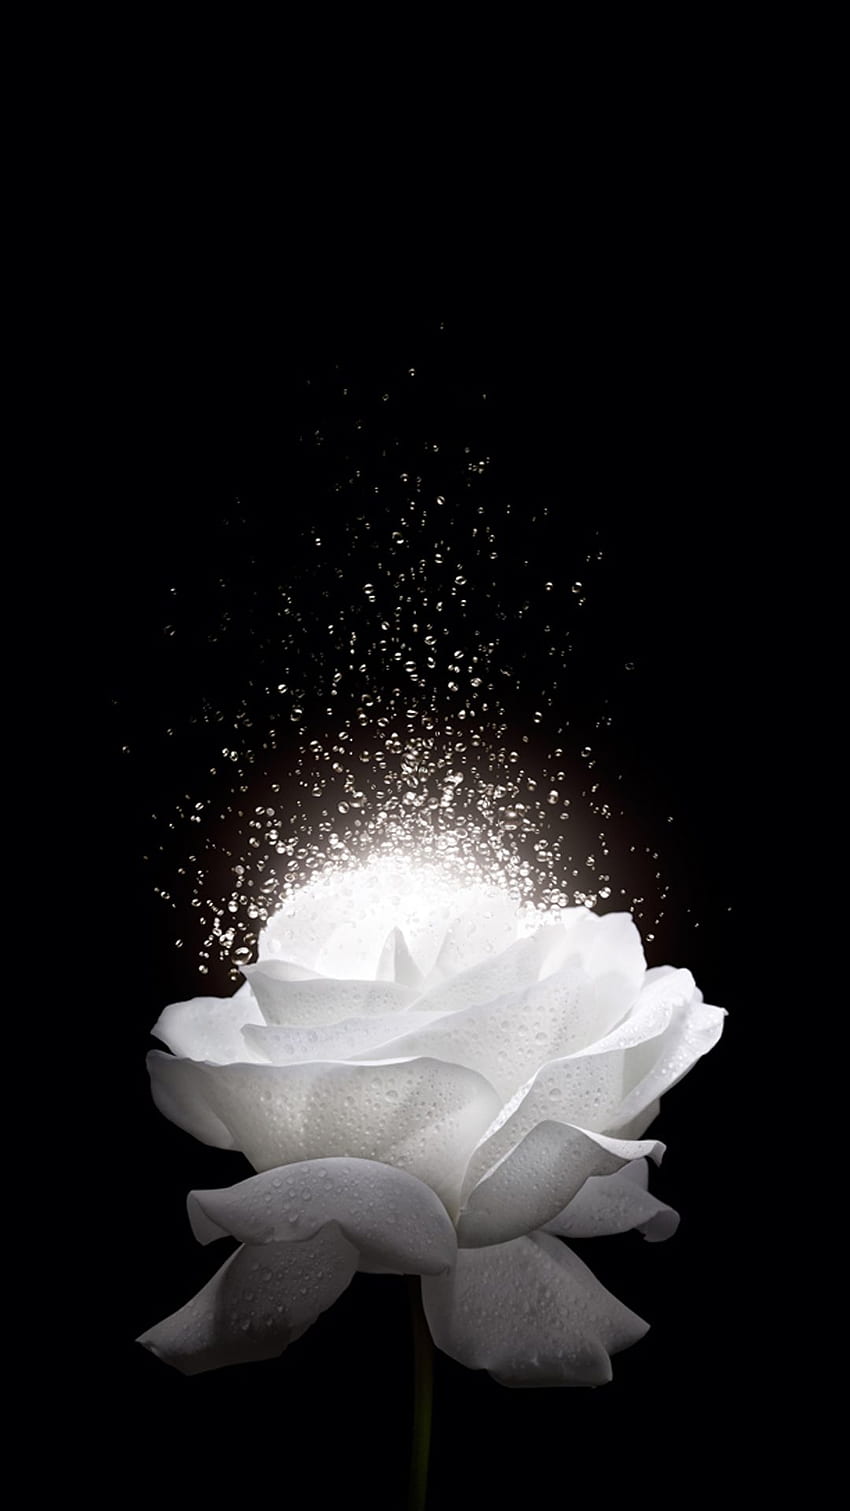 Hintergrund der weißen Rose H5. Blumentelefon, weißer Rosenhintergrund, schöne Blumen, schöne schwarze und weiße Blume HD-Handy-Hintergrundbild